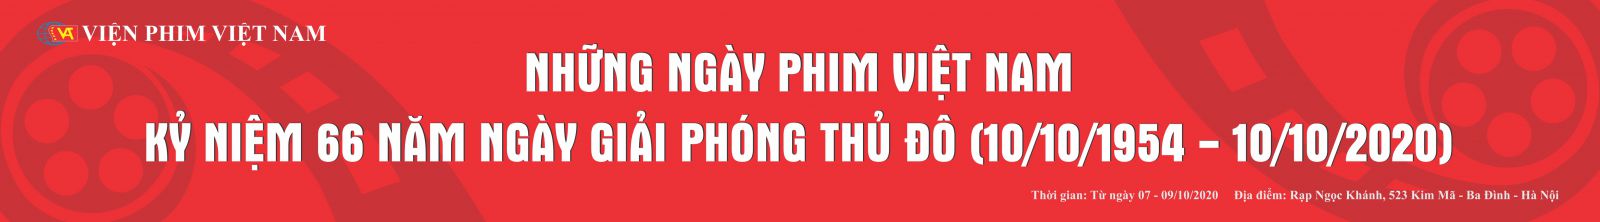 Những ngày phim Việt Nam kỷ niệm 76 năm ngày thành lập Quân đội nhân dân Việt Nam (22/12/1944 – 22/12/2020)